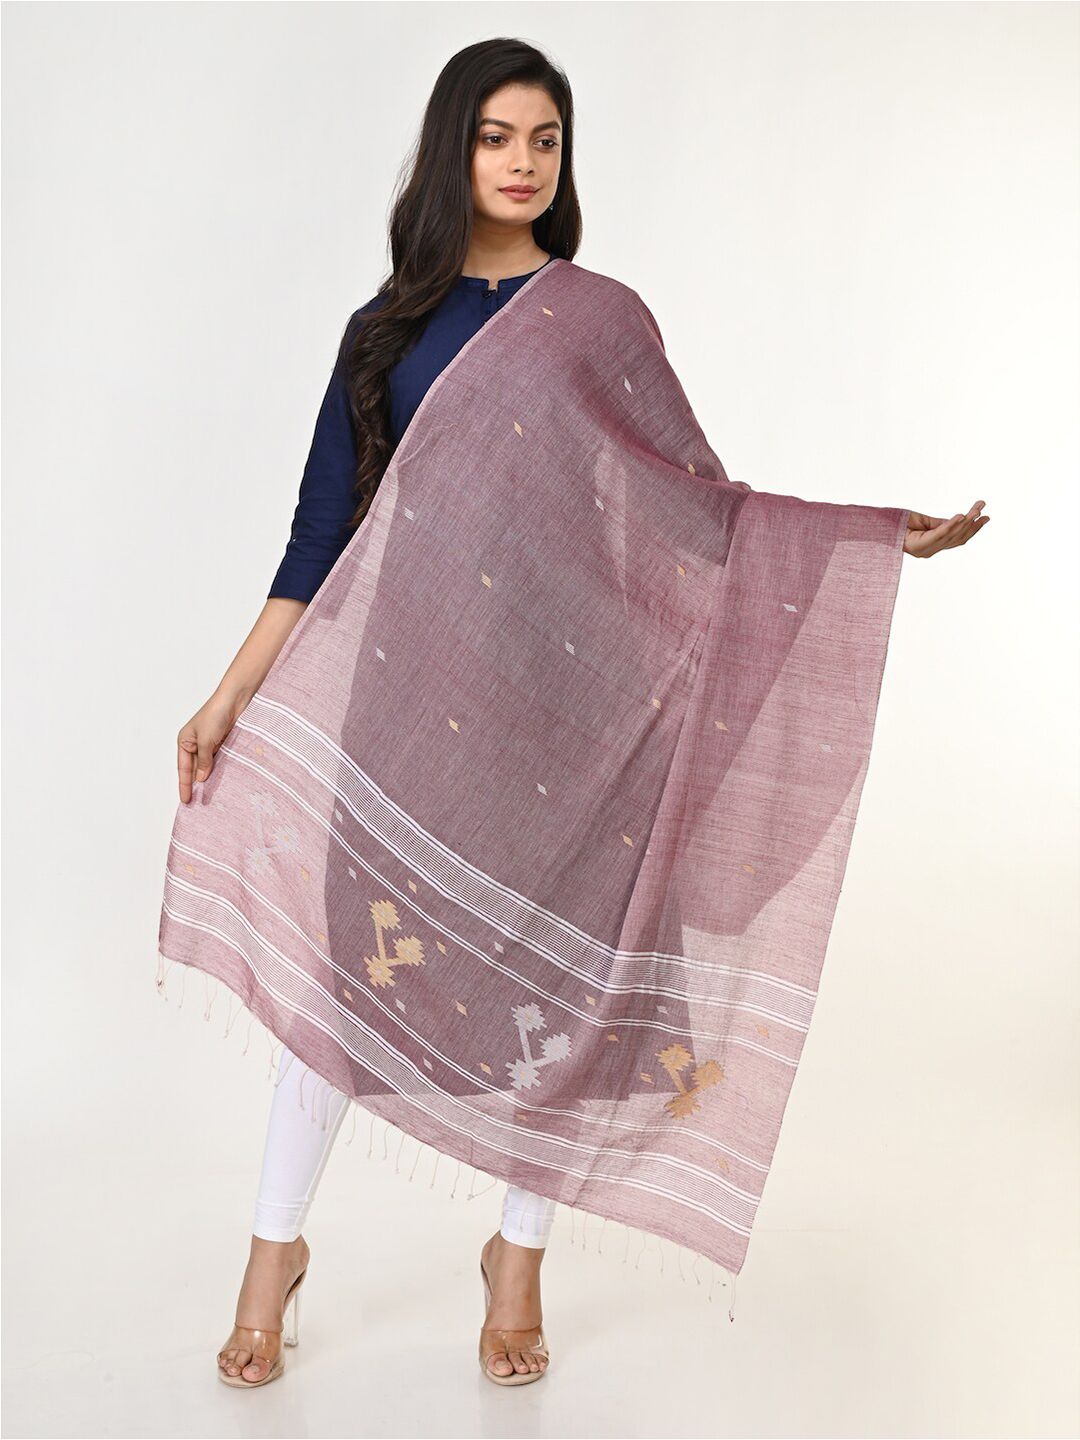 ArtEastri Pink & White Woven Design Pure Cotton Dupatta Price in India